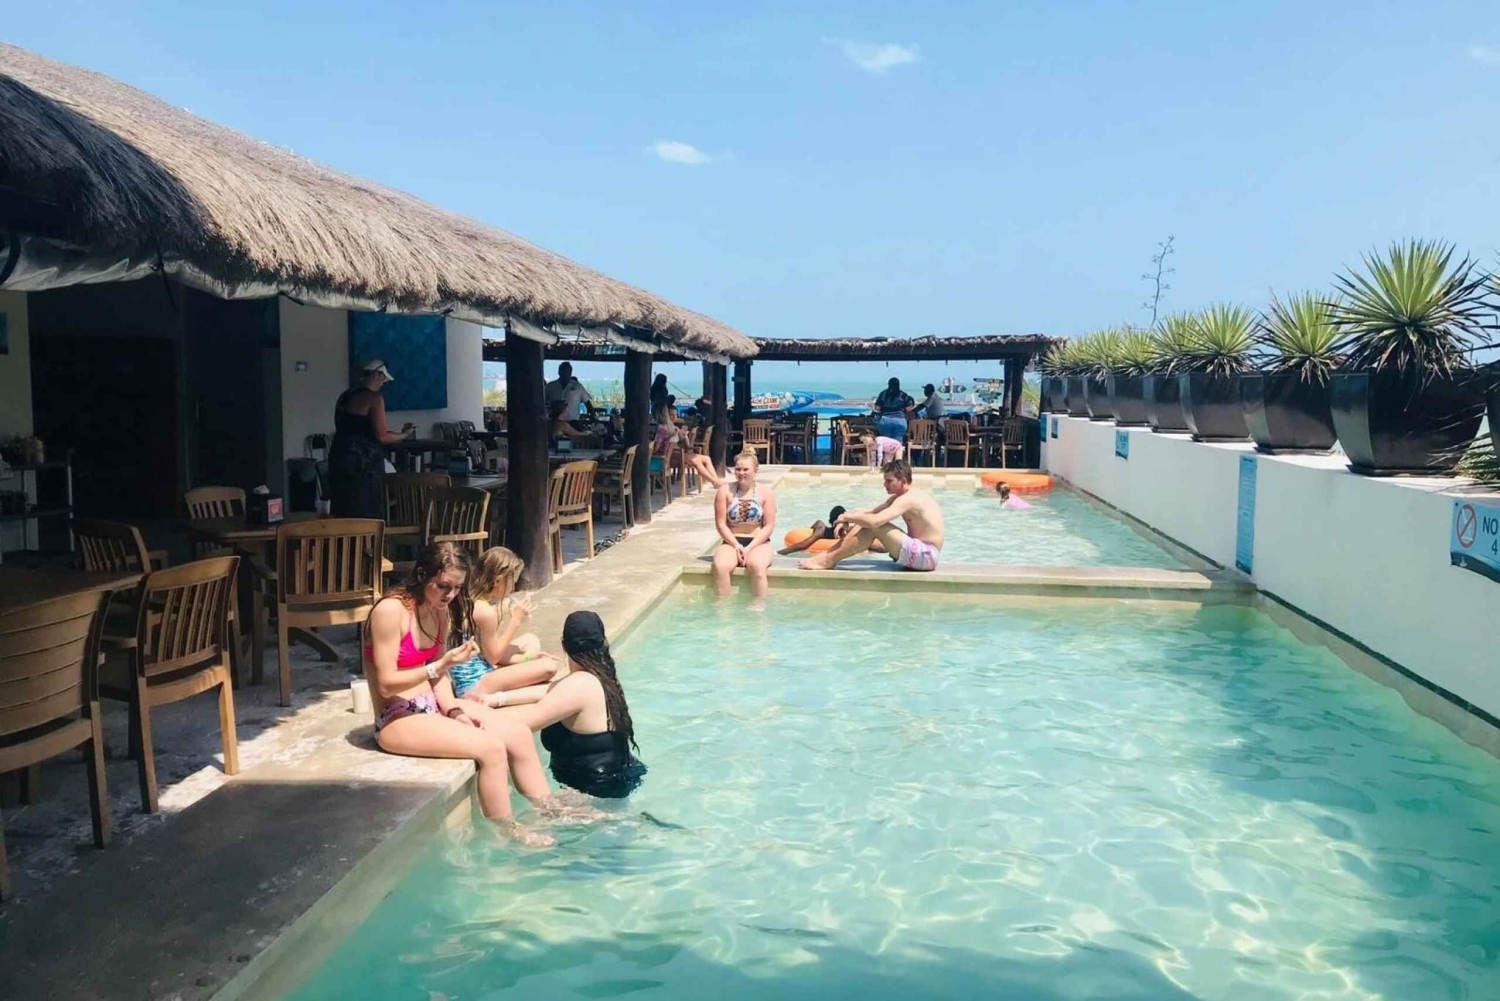 Progreso: Silcer Beach Club Access with All-Inclusive Option in Mexico